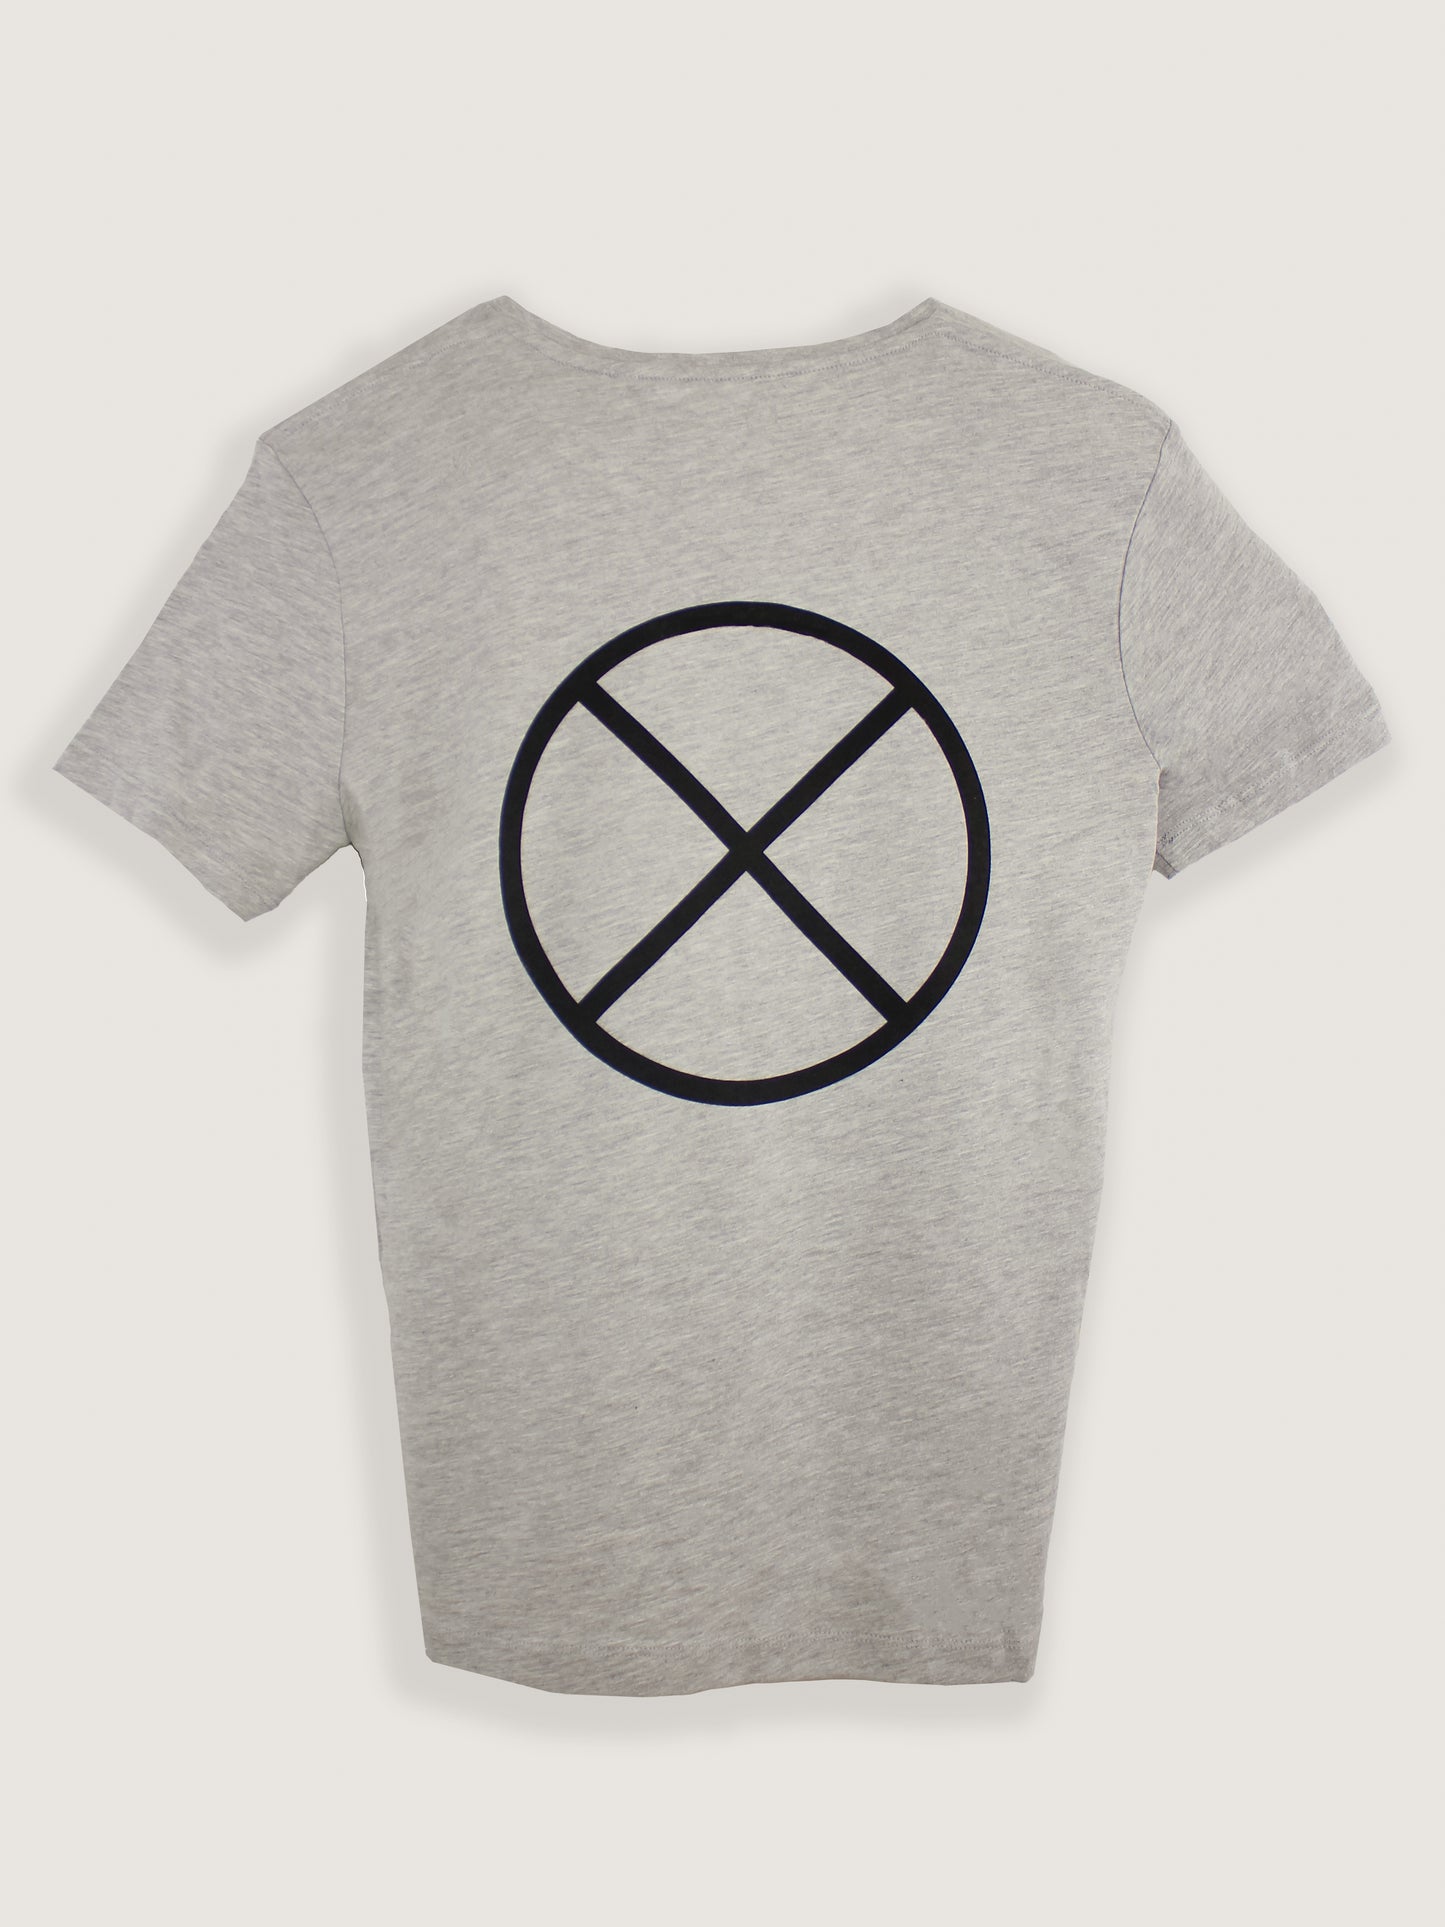 Camiseta · 100% algodón orgánico · Light Oxford [EDICIÓN LIMITADA] (6789058822221)